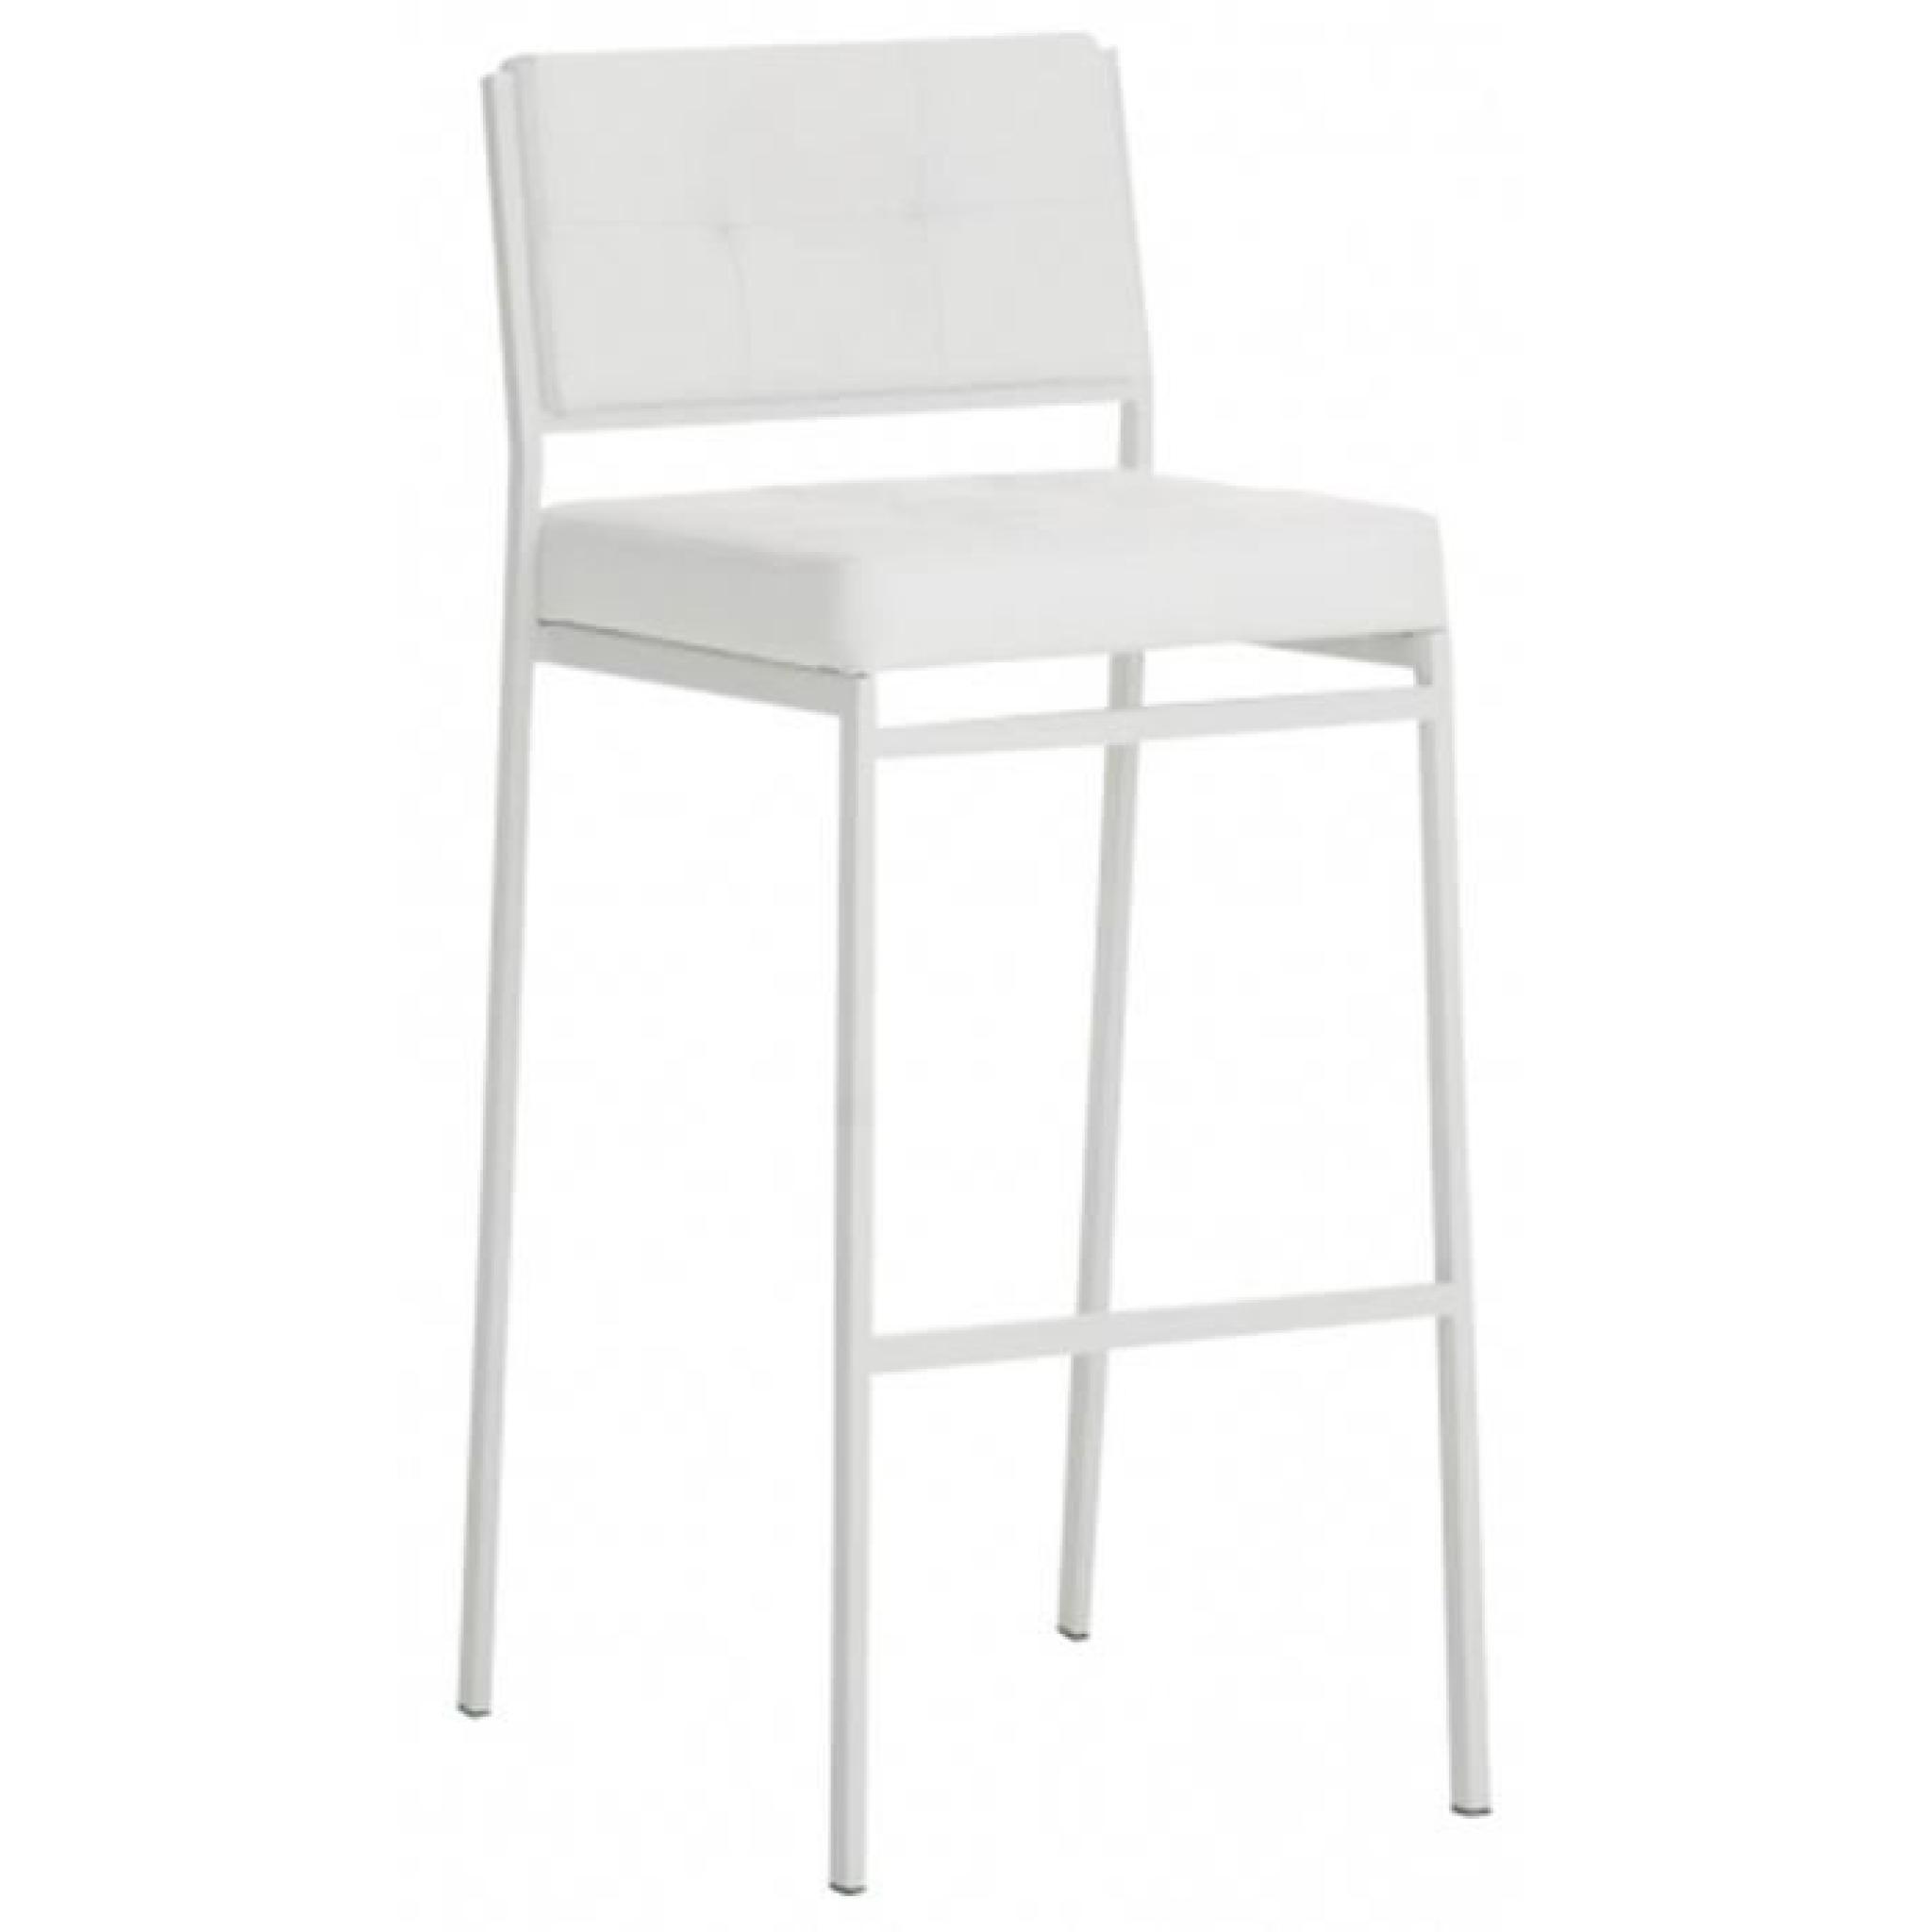 Chaise de bar en métal et PU de couleur blanche, H 101 x L 41 x P 48 cm